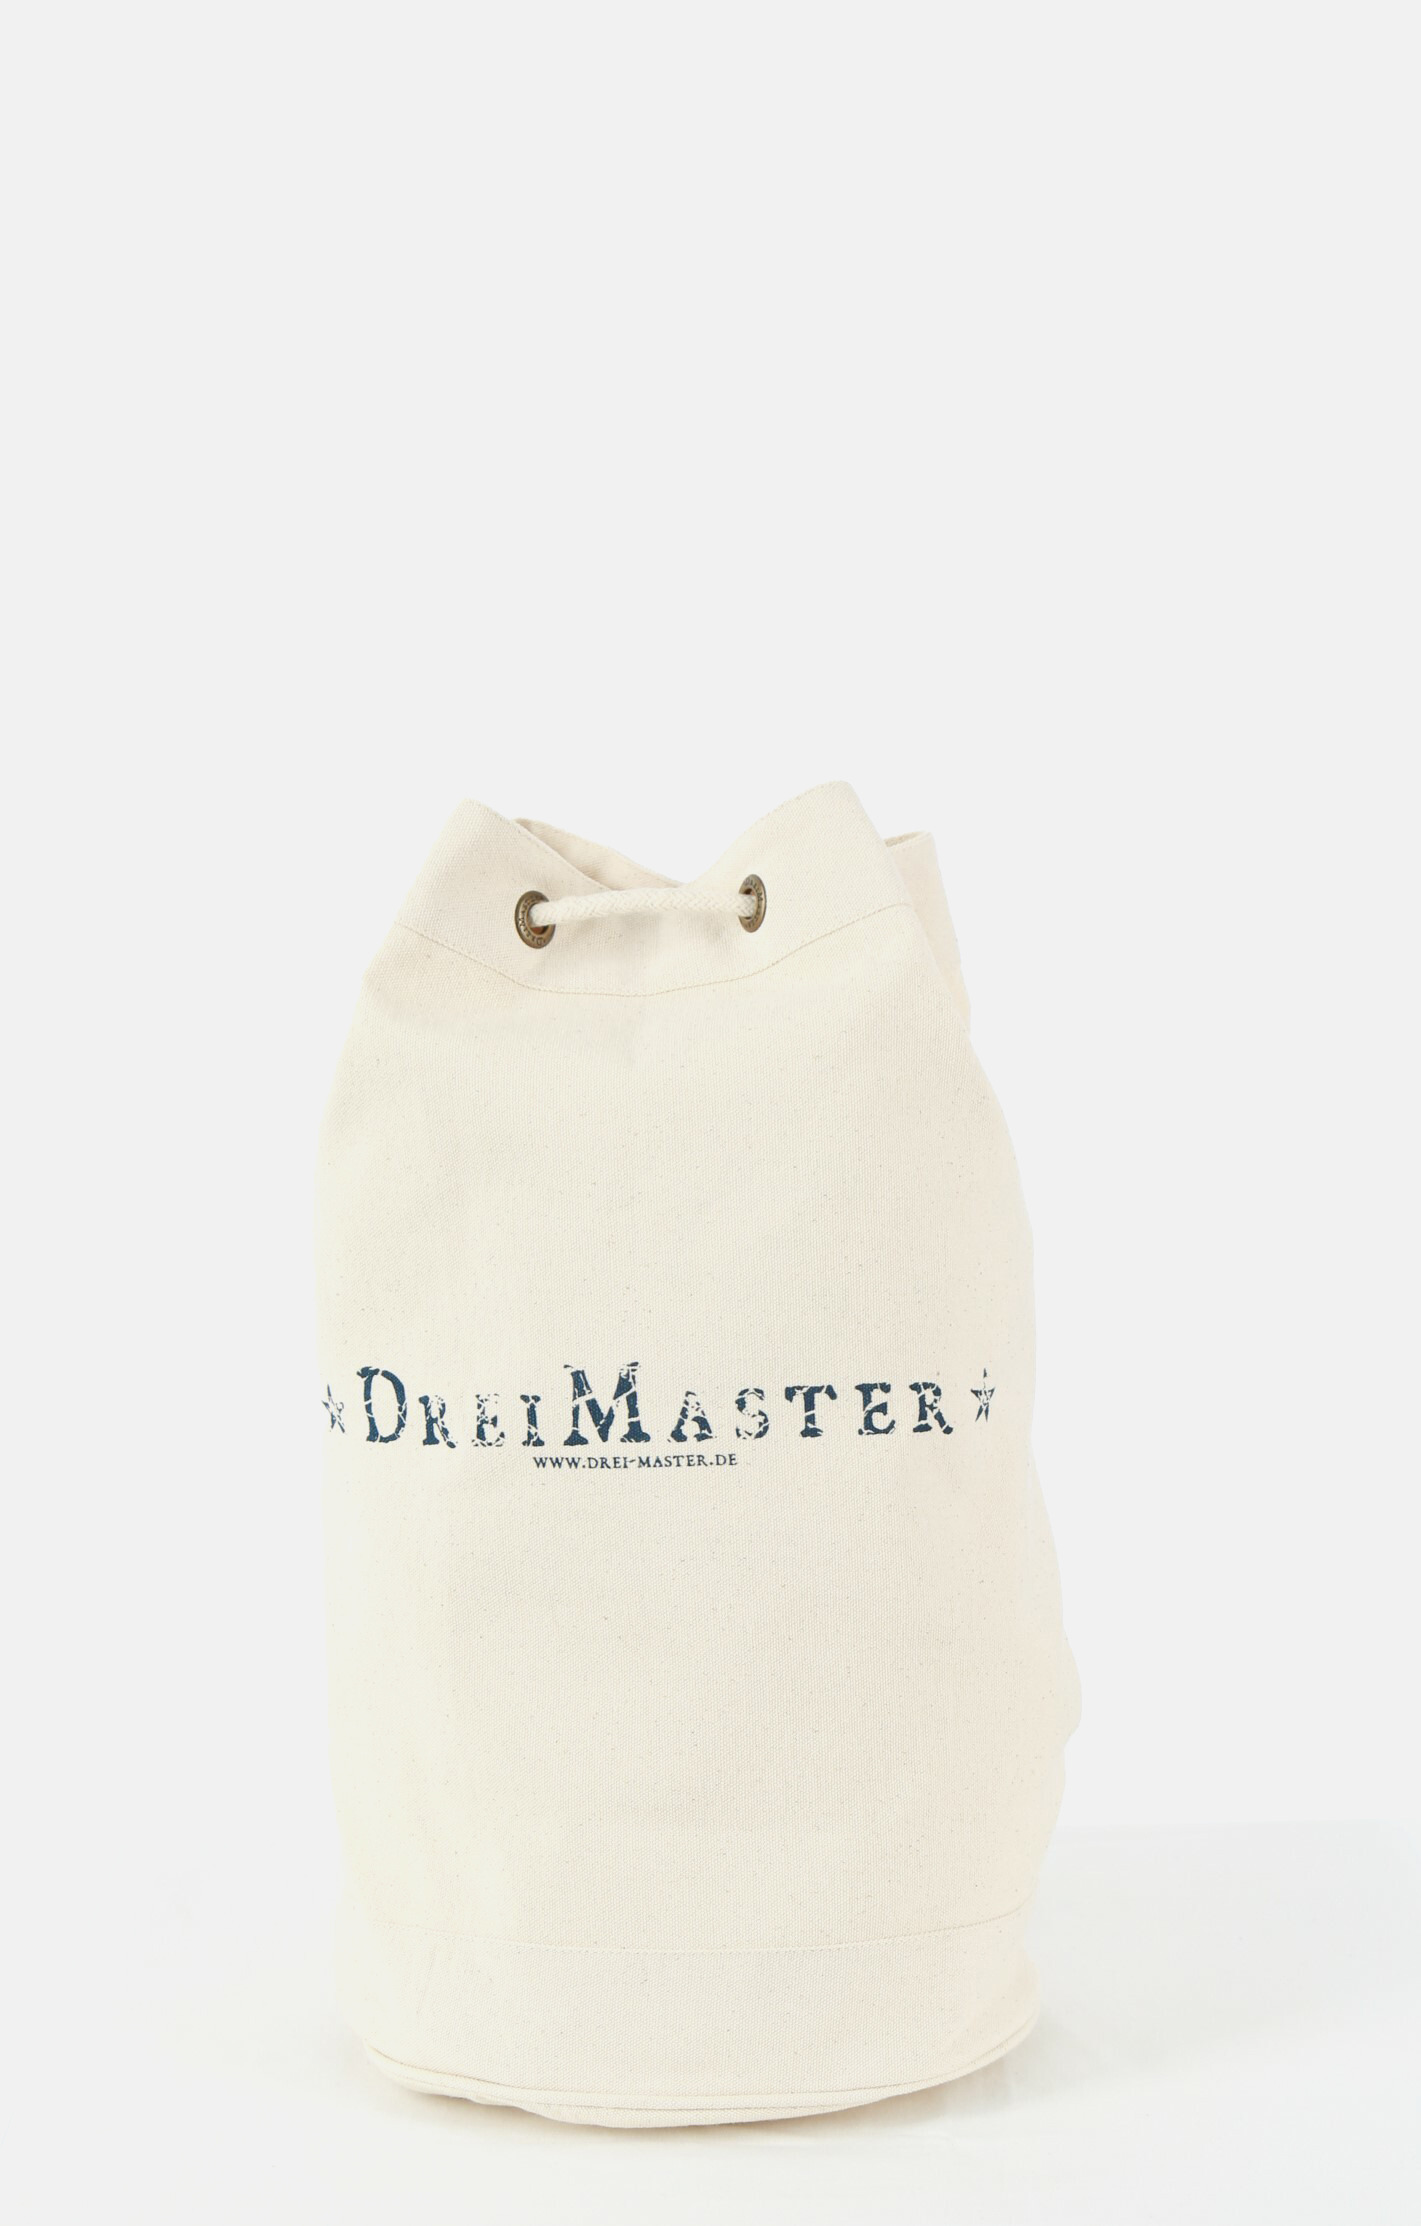 Свитер DreiMaster Strick + Shopping Bag Set, цвет Marine Weiss свитер dreimaster strick цвет marine weiss